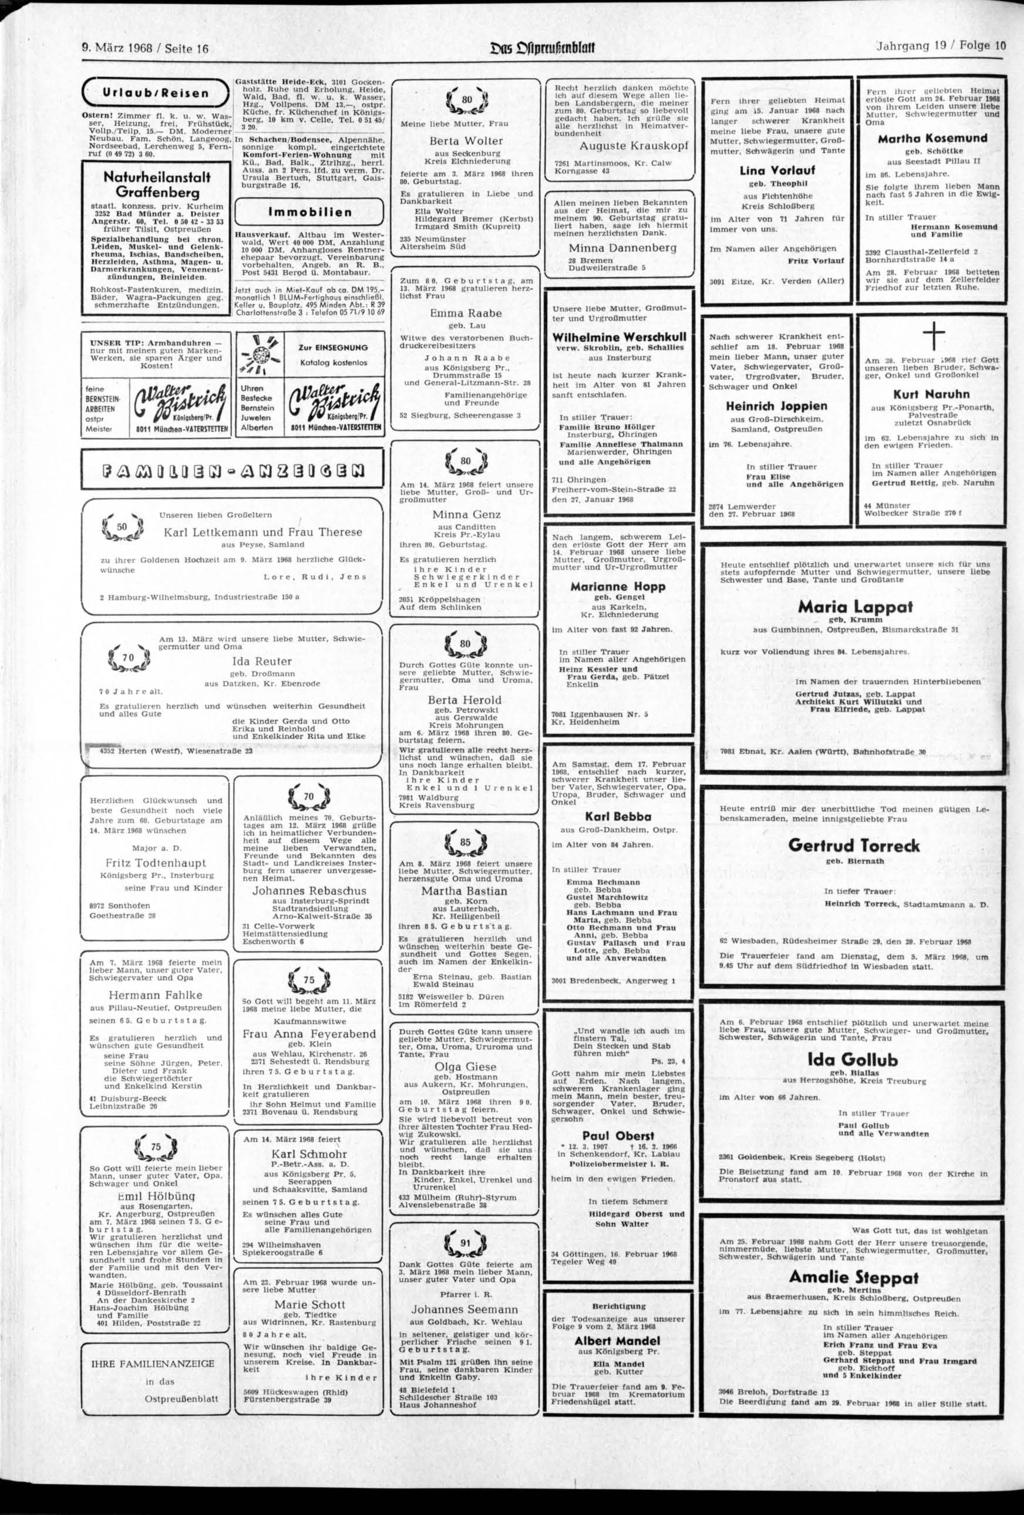 9 März 1968 Seite 16 Das flprfufxnblaff Jahrgang 19 Folge 10 G rlaub